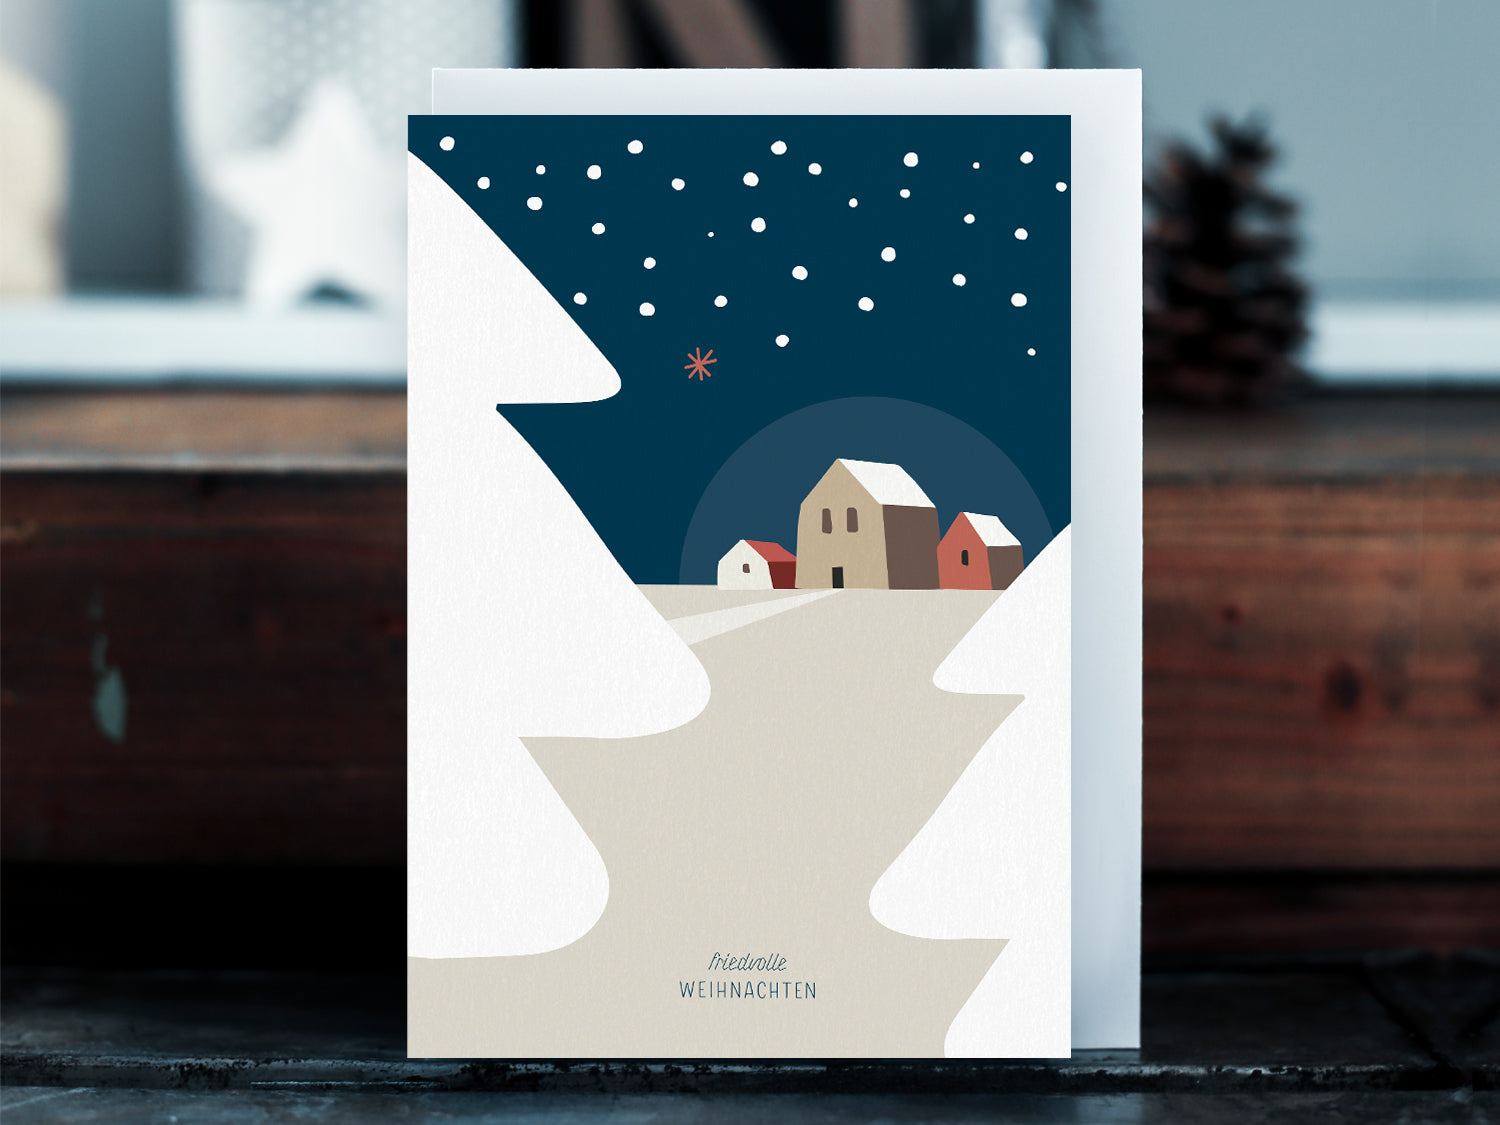 Weihnachtskarte im Scandi Nordic Stil als kleiner Postkartengruß, illustriert mit einer ruhigen, verschneiten Winterlandschaft und dem Wunsch nach "friedvollen Weihnachten".  Gedeckten Pastellfarben, ein minimalistischem Nordic Design Stil. So zaubert dieser Weihnachtsgruß eine gemütliche Atmosphäre unter den Tannenbaum.